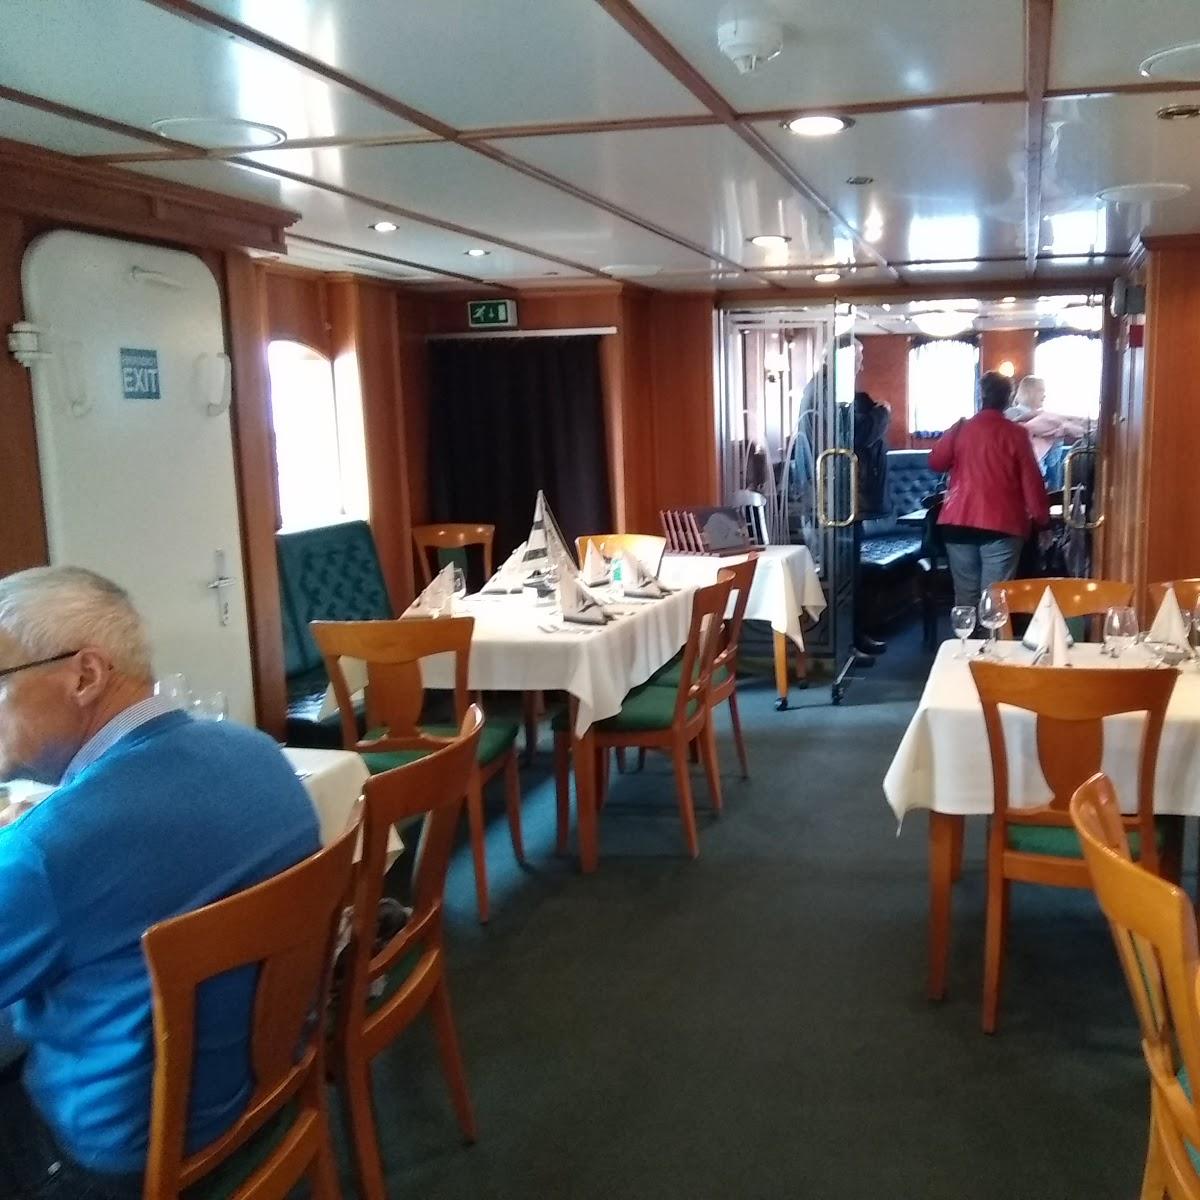 Restaurant "Salondampfer MS Hansa Restaurantschiff" in Bremerhaven